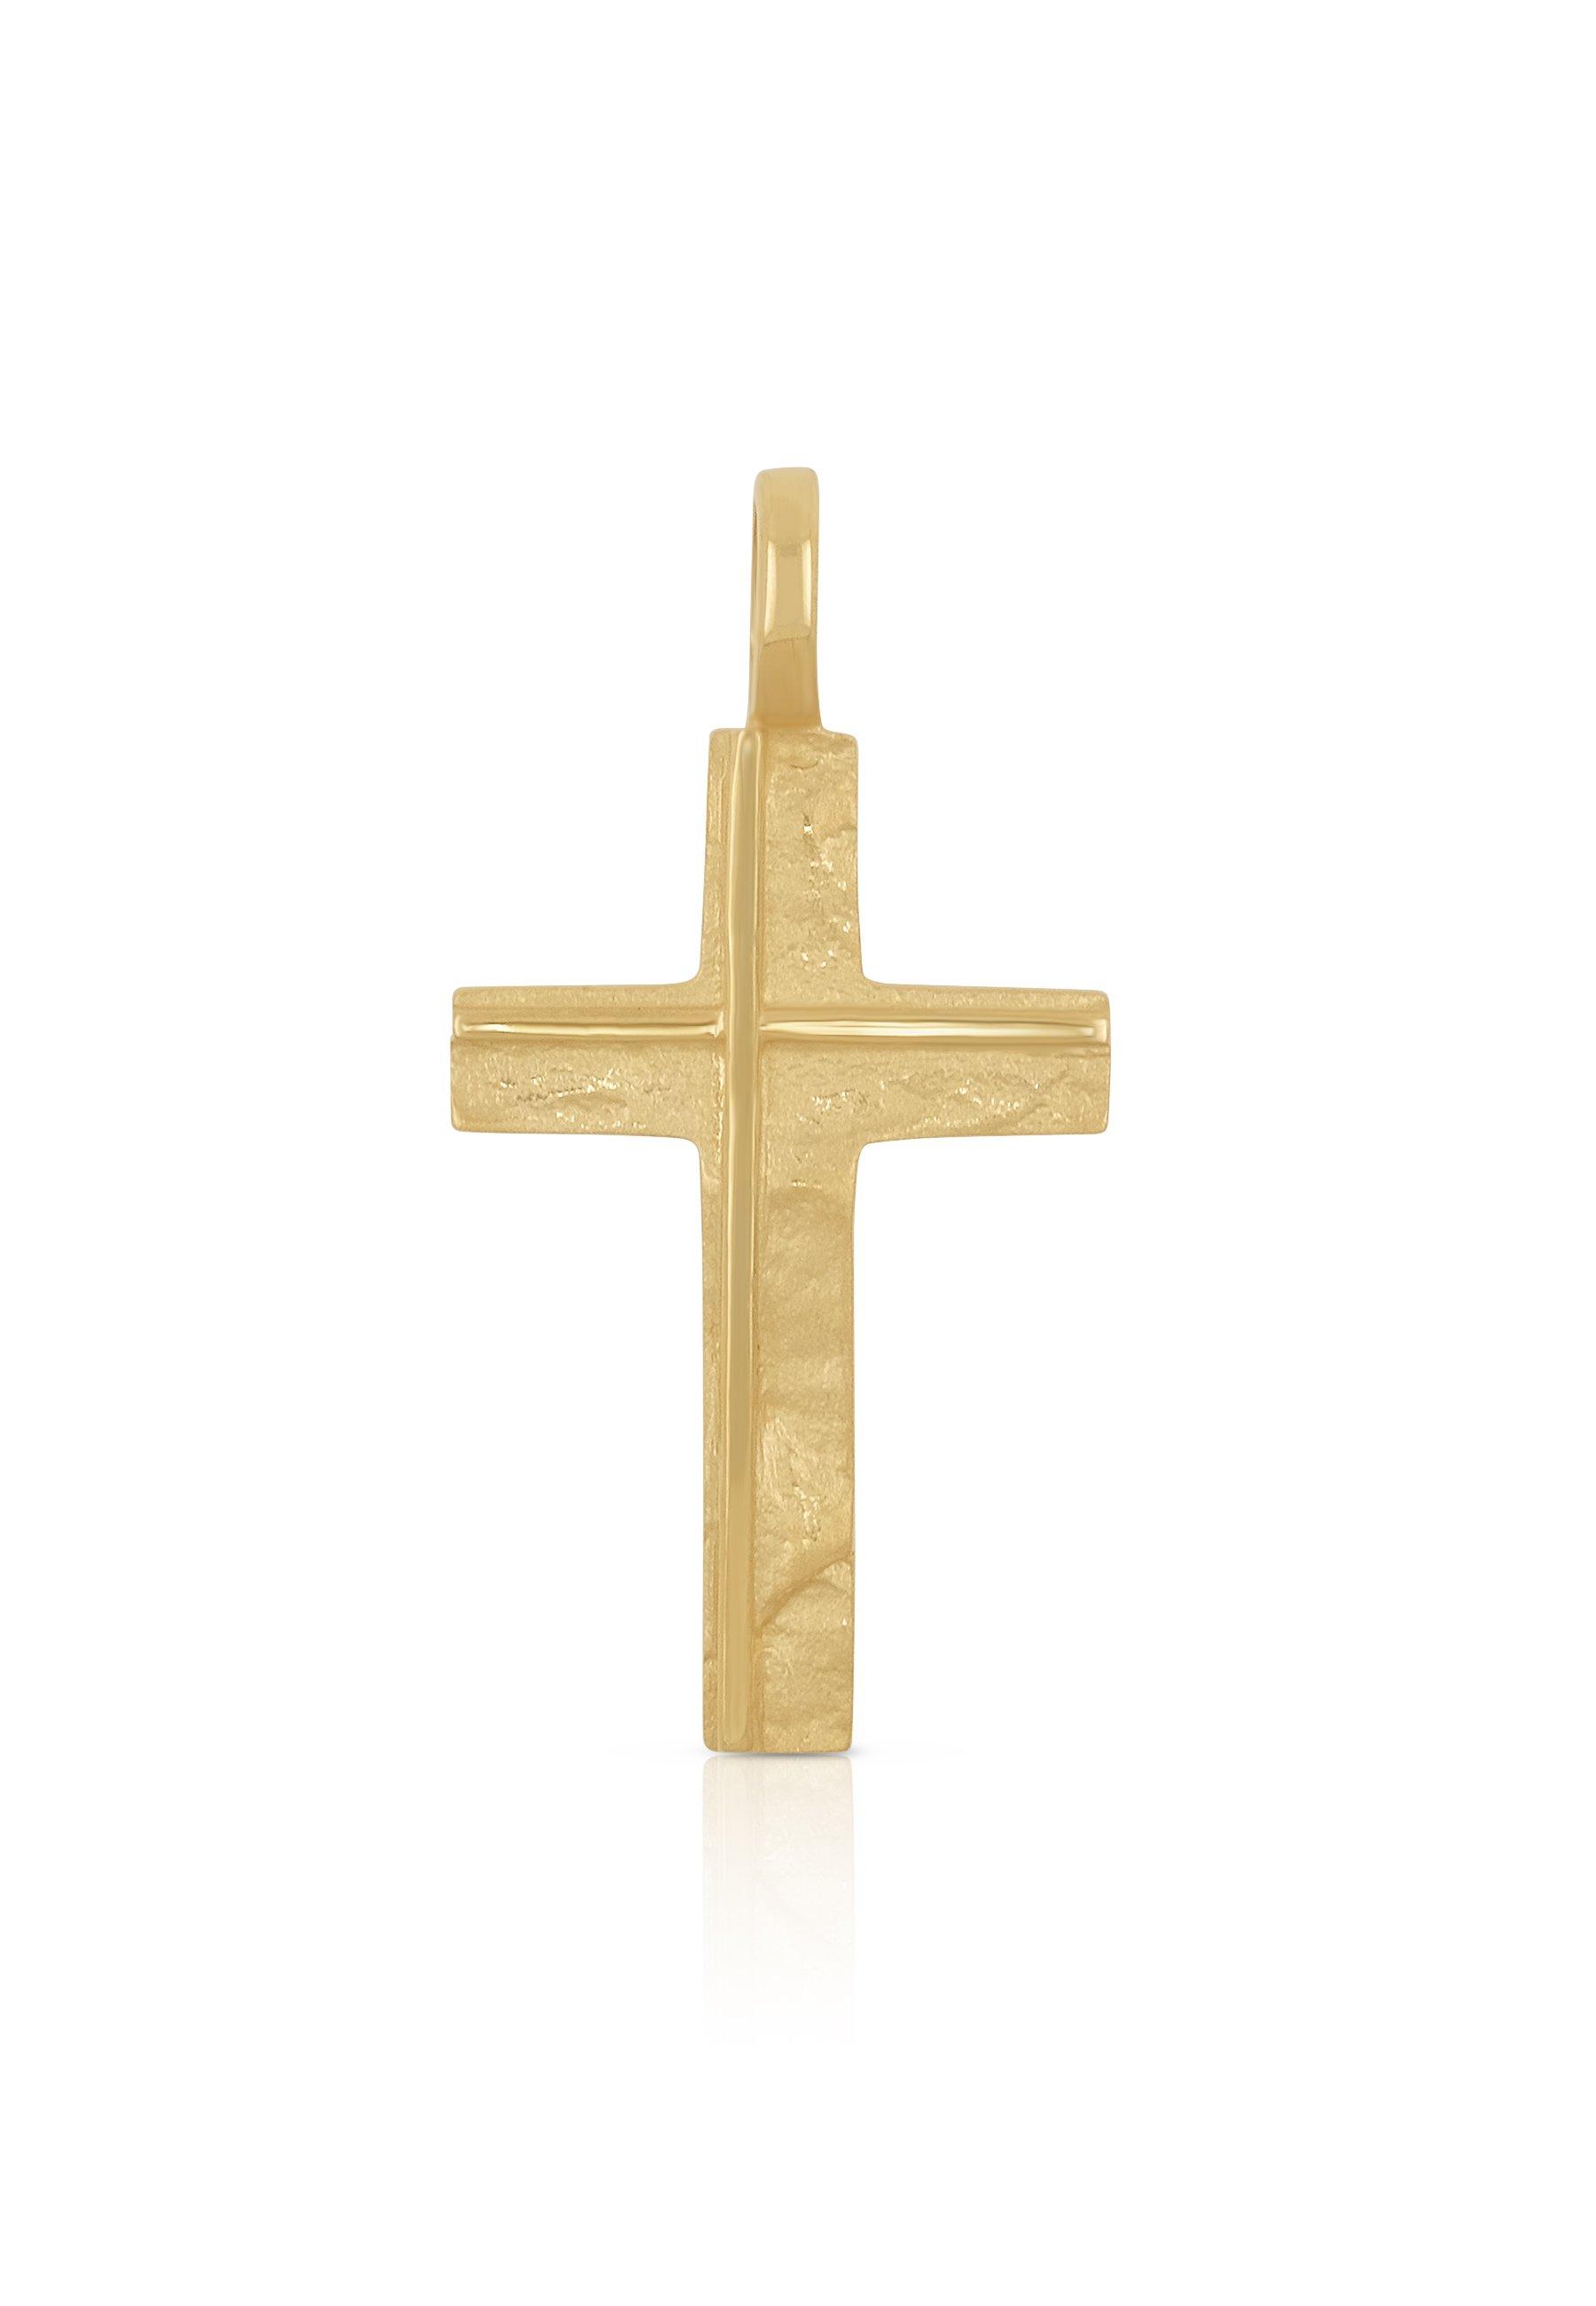 MUAU Schmuck  Pendentif croix en or jaune 750, 27x14mm 